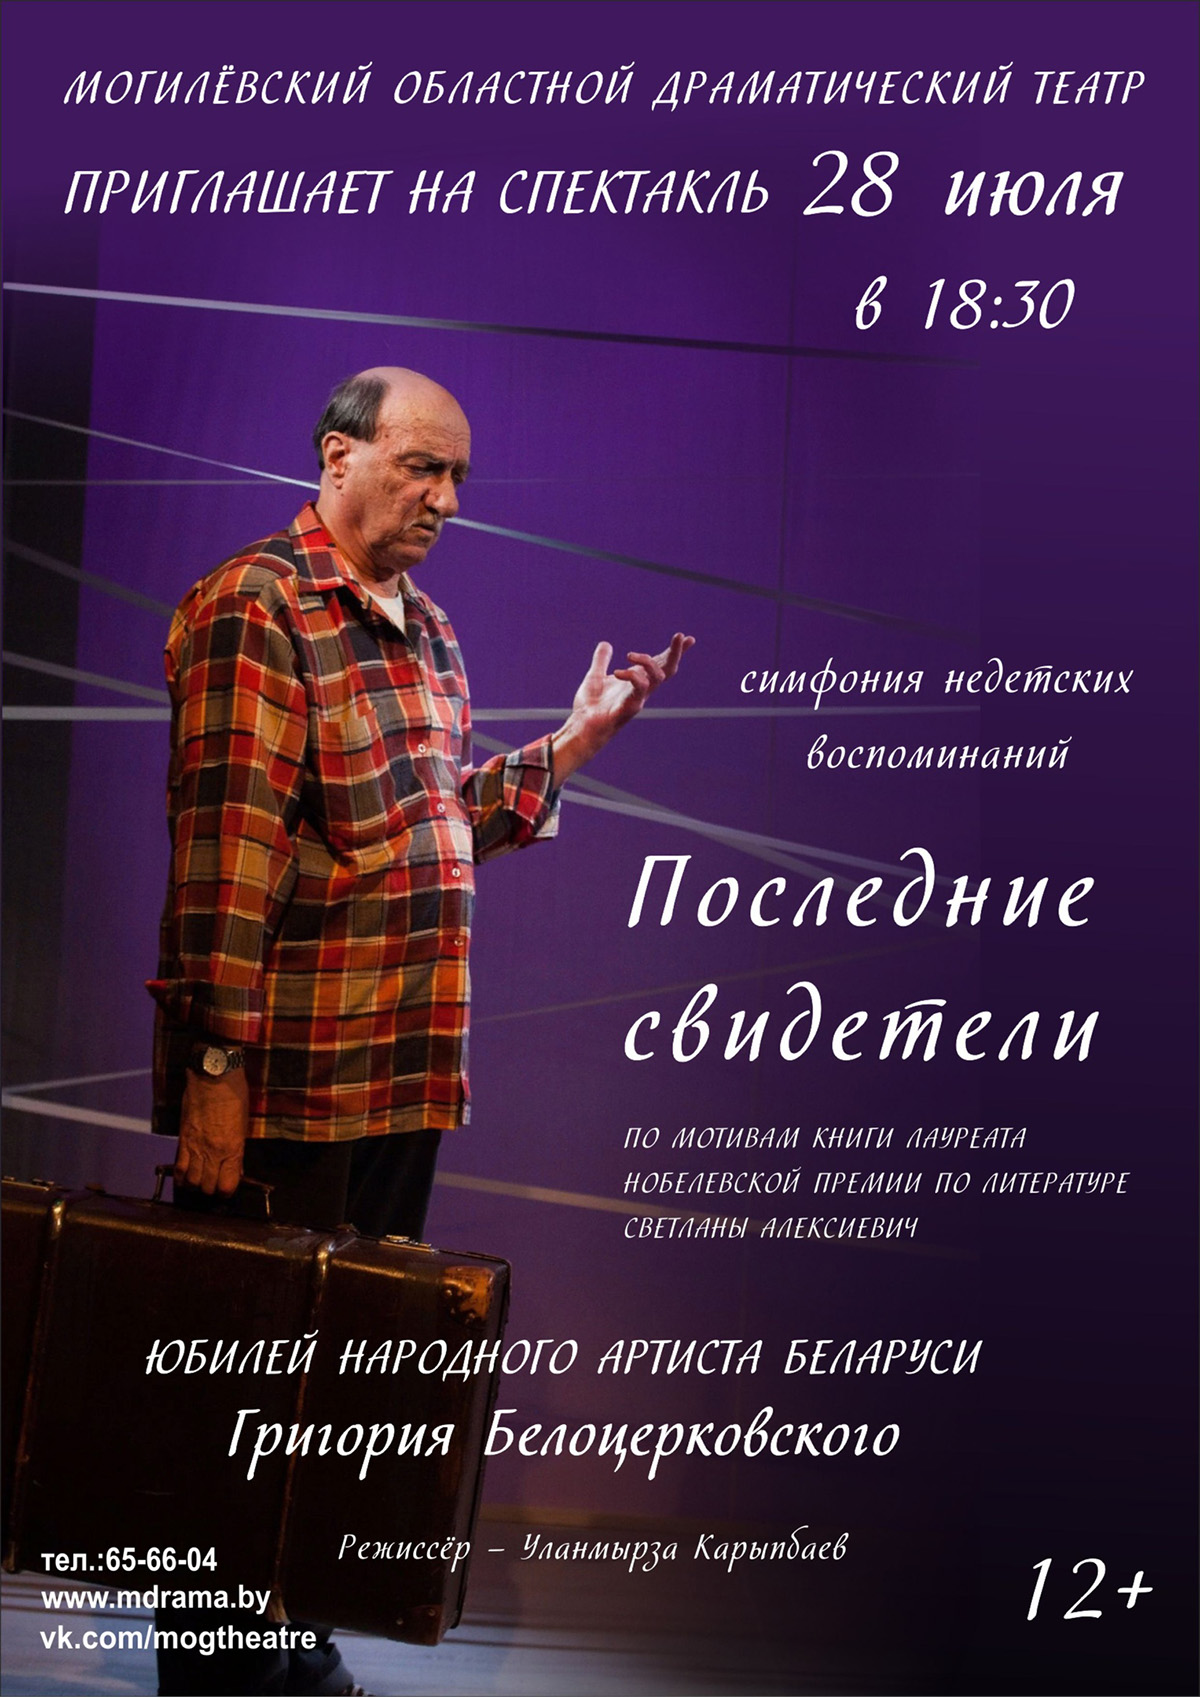 Юбилей на сцене: в день 75-летия Григория Белоцерковского в Могилевском драмтеатре состоится показ спектакля с его участием